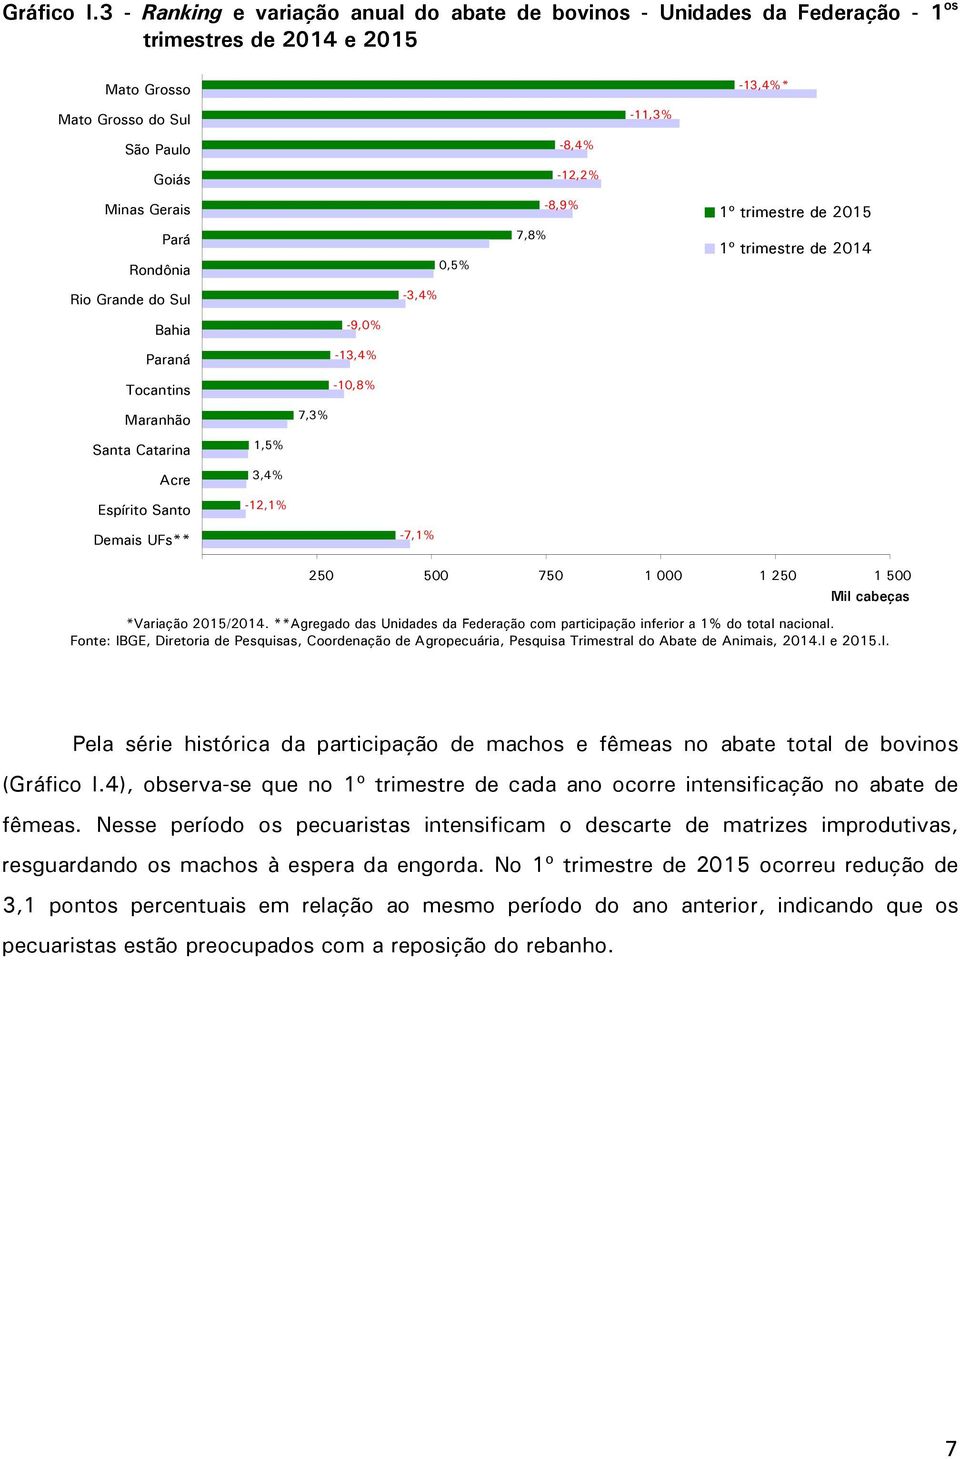 1º trimestre de 2015 Pará Rondônia 0,5% 7,8% 1º trimestre de 2014 Rio Grande do Sul -3,4% Bahia Paraná Tocantins -9,0% -13,4% -10,8% Maranhão 7,3% Santa Catarina Acre Espírito Santo 1,5% 3,4% -12,1%